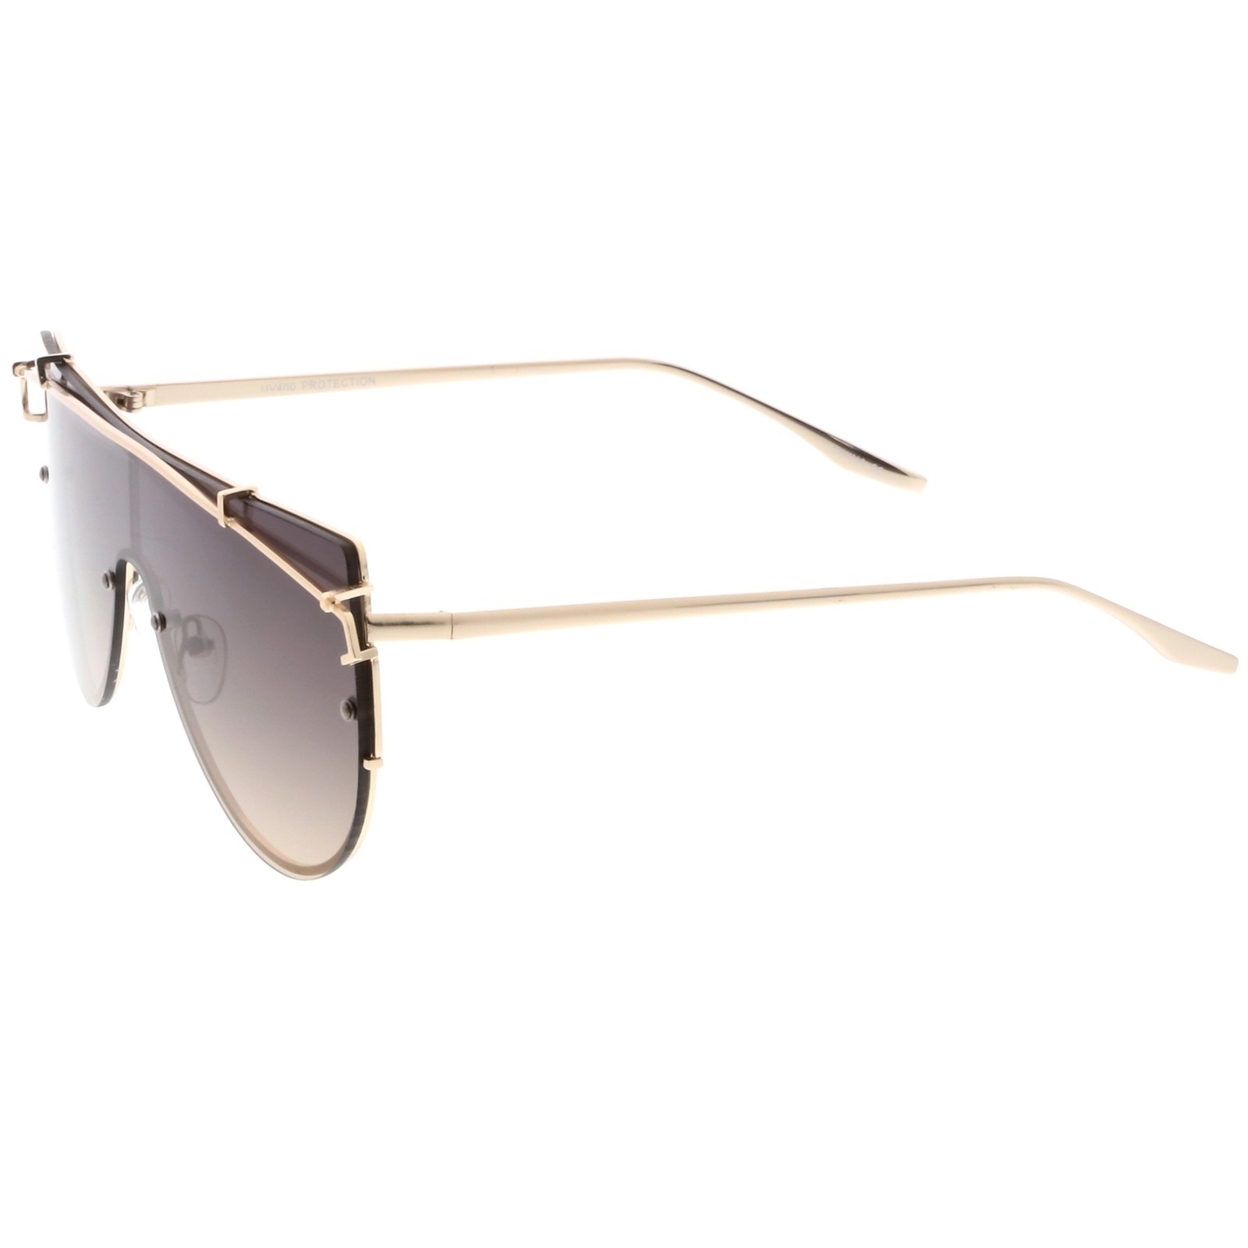 Futuristic Rimless Metal Crossbar Nuetral Colored Mono Lens Shield Sunglasses 64mm - Silver / Lavender